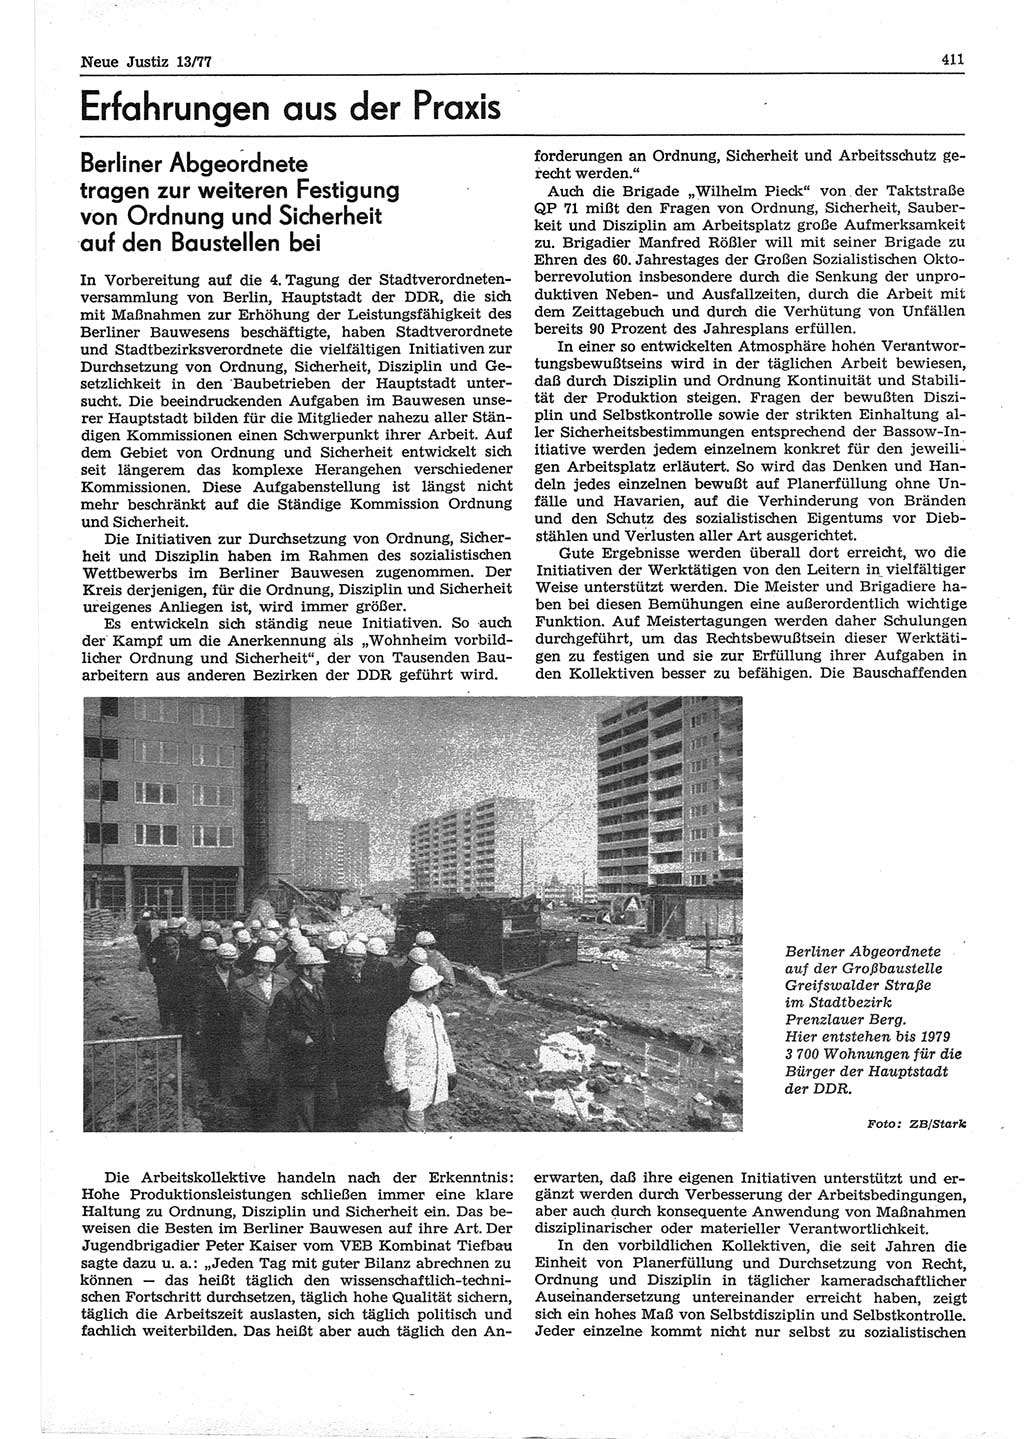 Neue Justiz (NJ), Zeitschrift für Recht und Rechtswissenschaft-Zeitschrift, sozialistisches Recht und Gesetzlichkeit, 31. Jahrgang 1977, Seite 411 (NJ DDR 1977, S. 411)